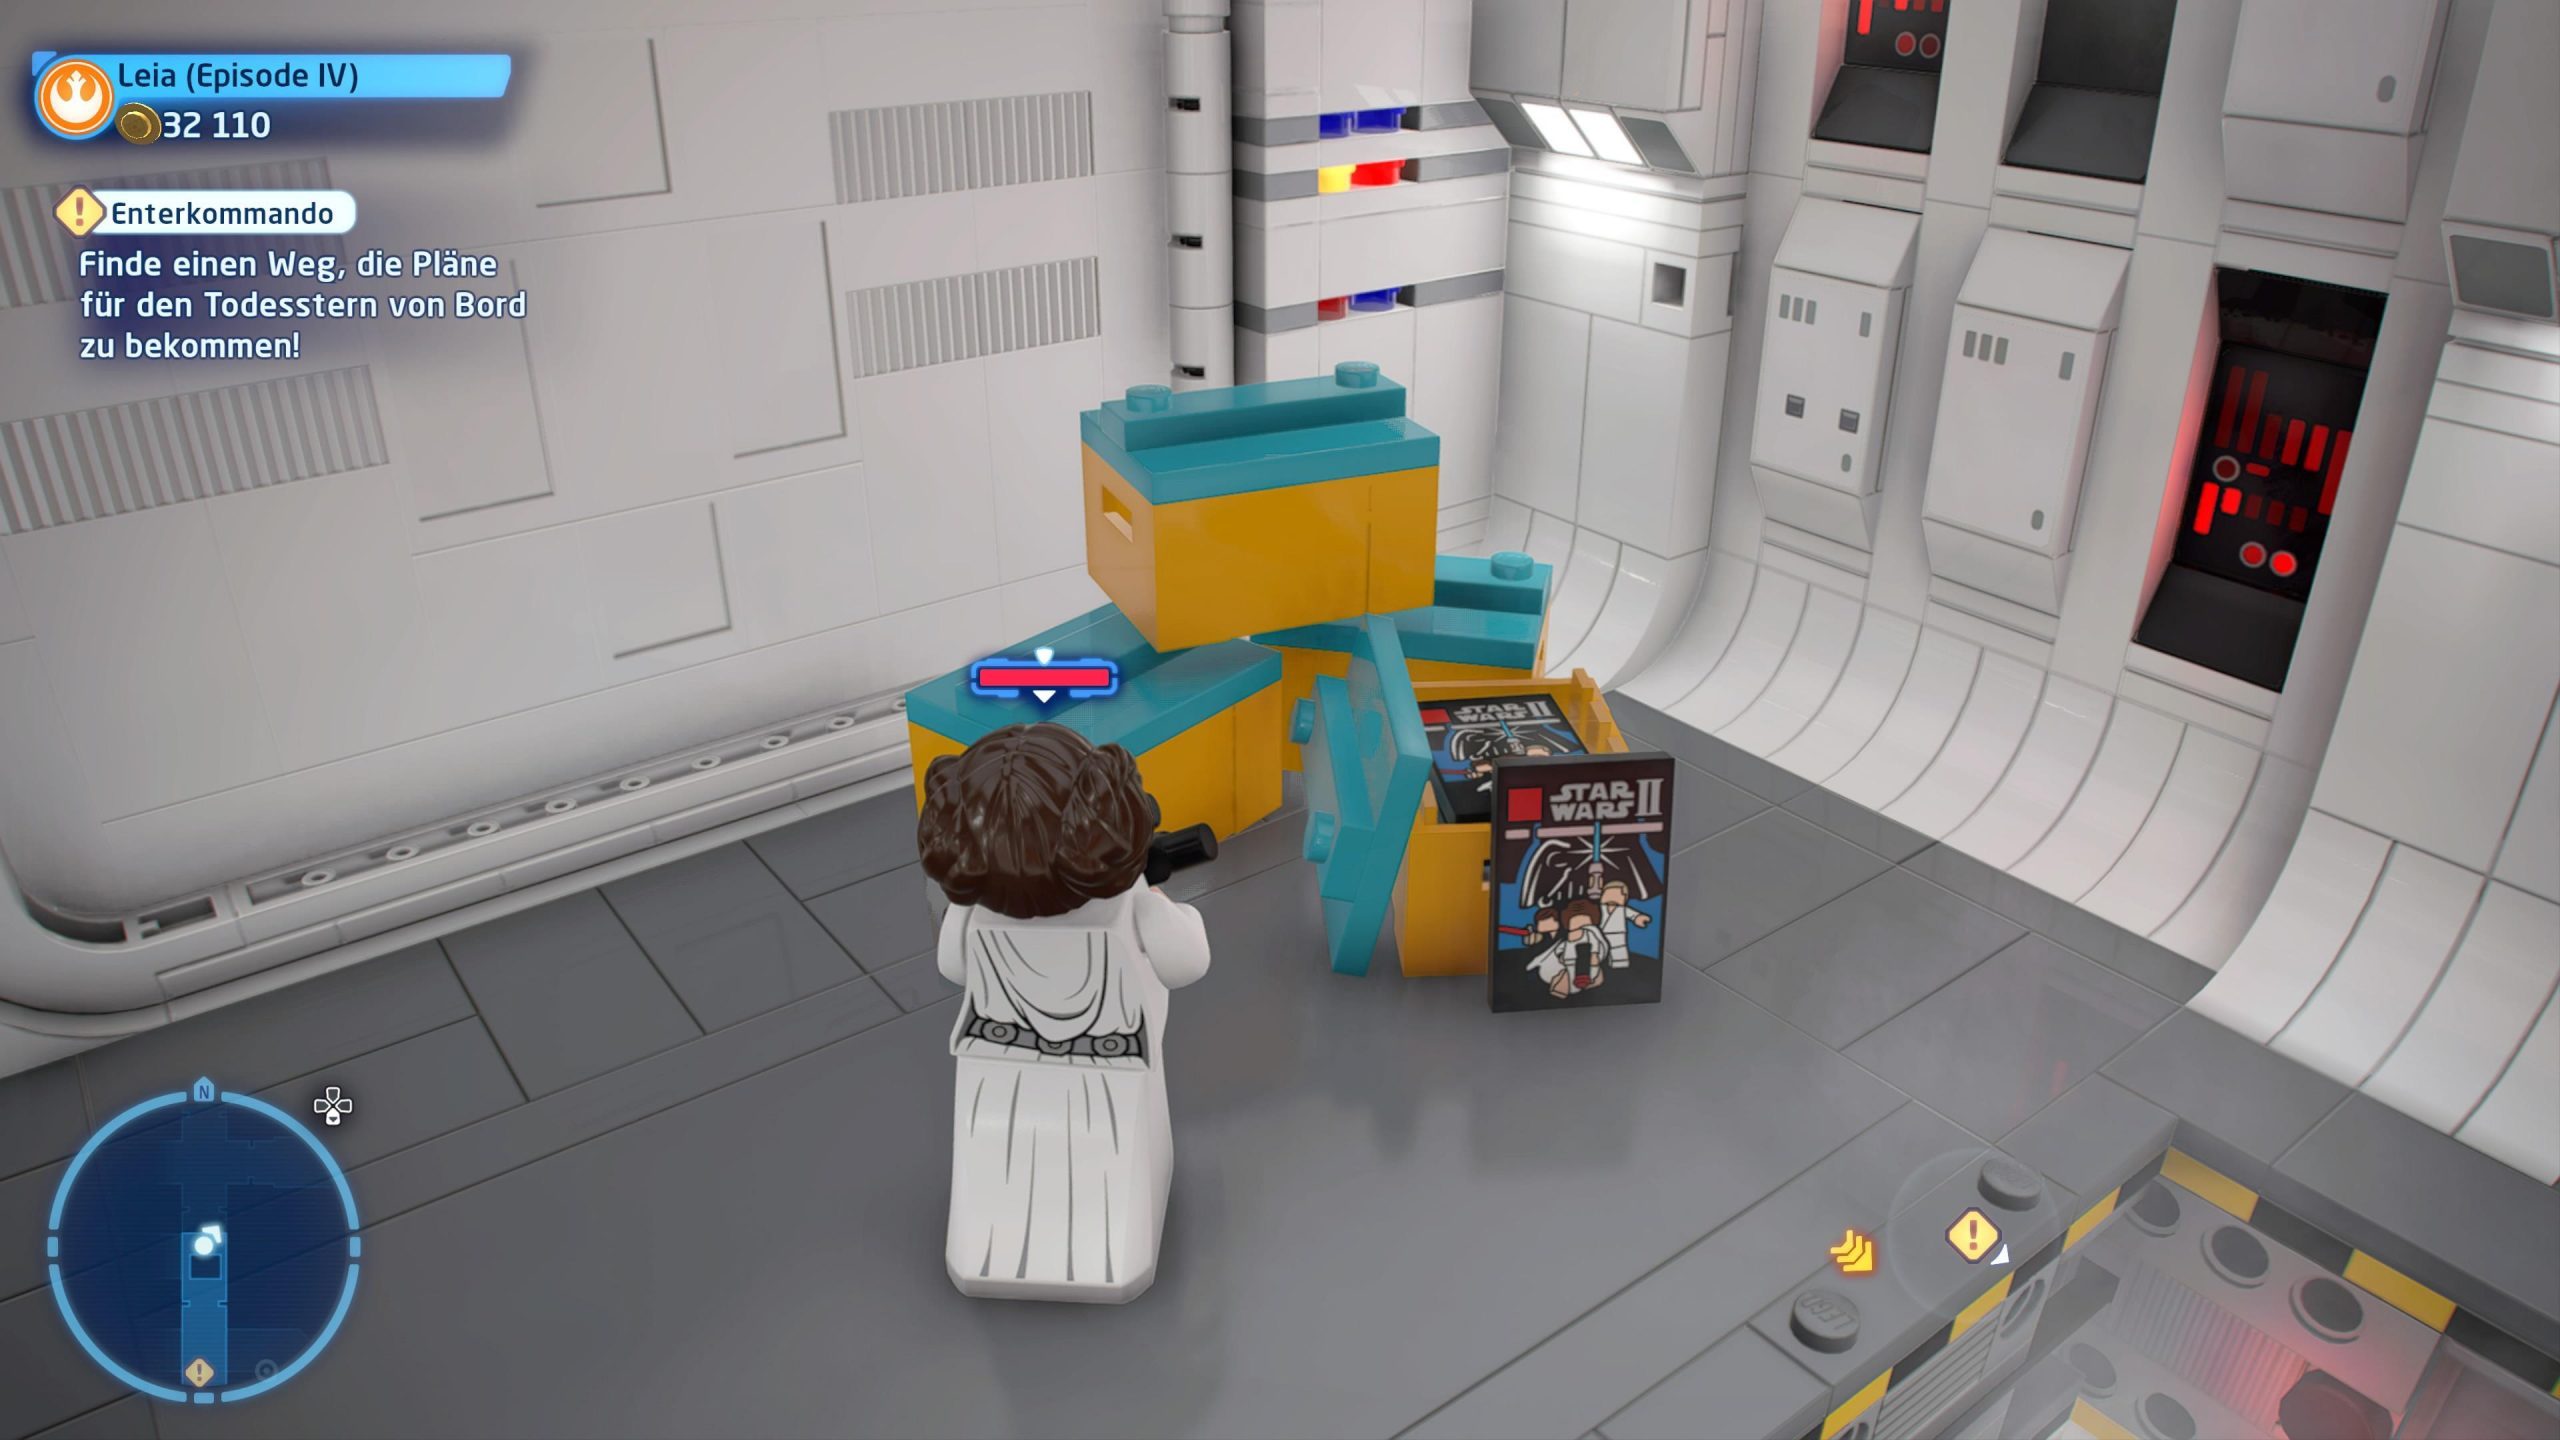 Lego Star Wars Leia boxart for Lego Star Wars 2